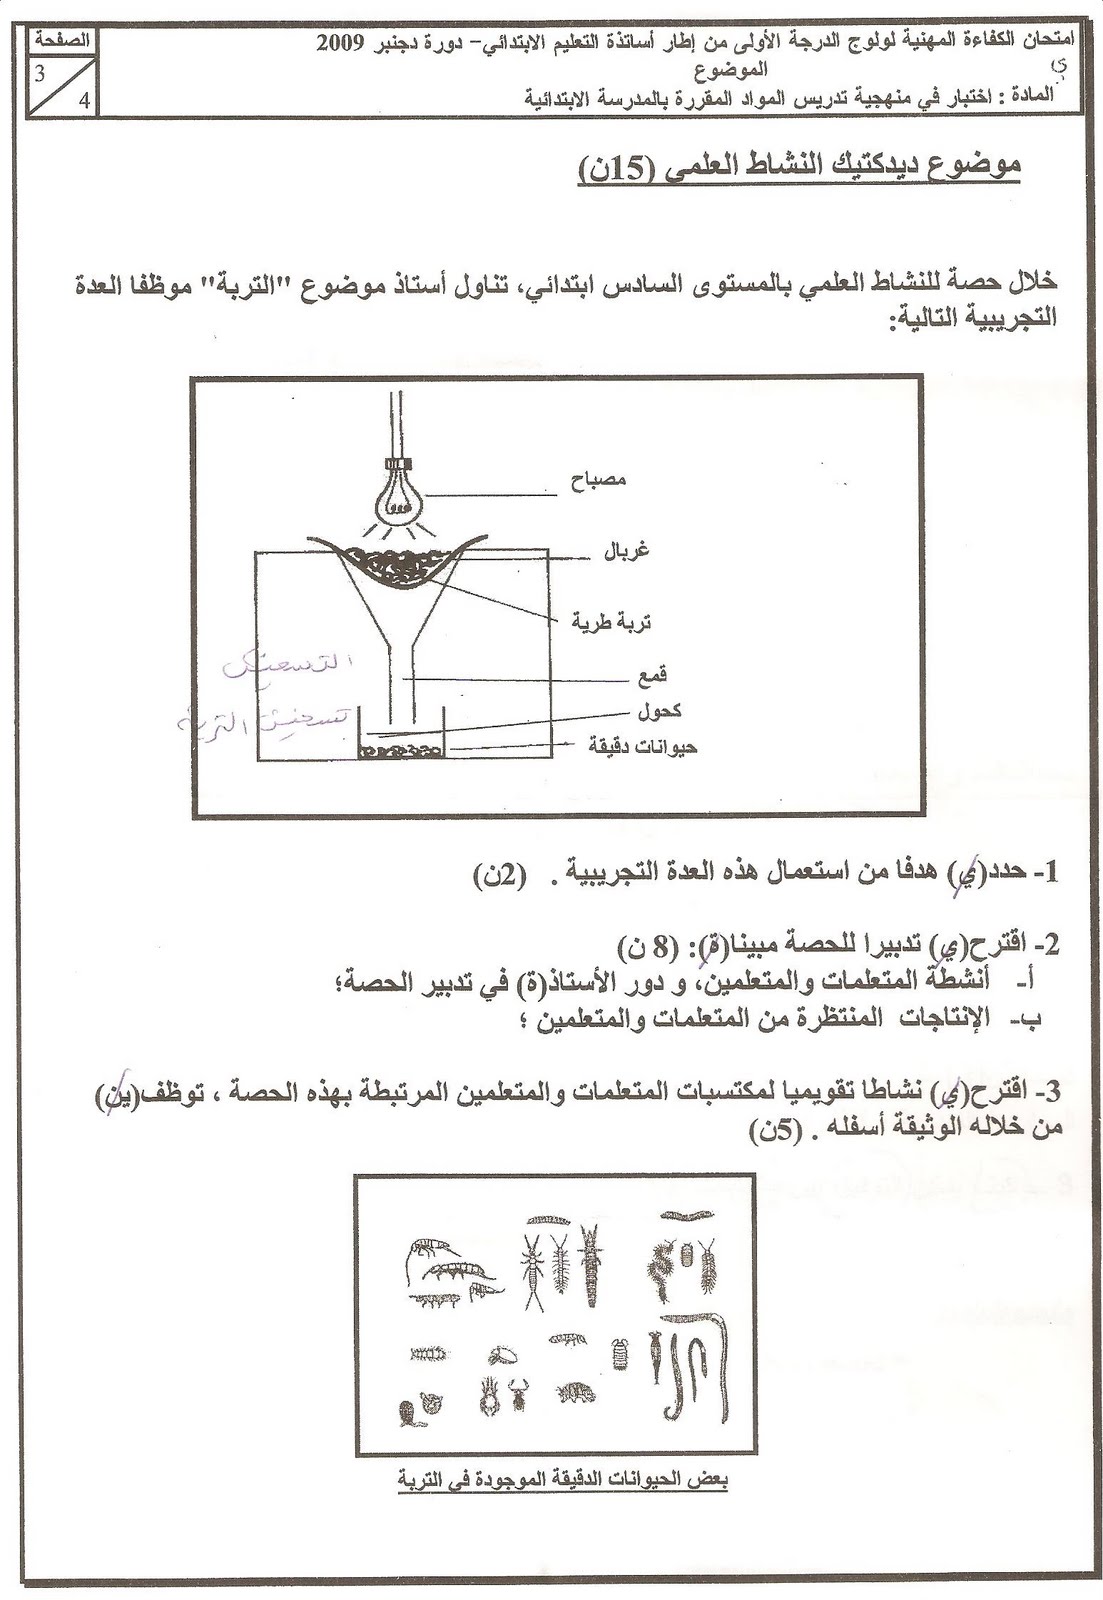 الامتحان المهني لأساتذة التعليم الابتدائي مادة النشاط العلمي السلم11 السنة 2009 Anachate+alilmi